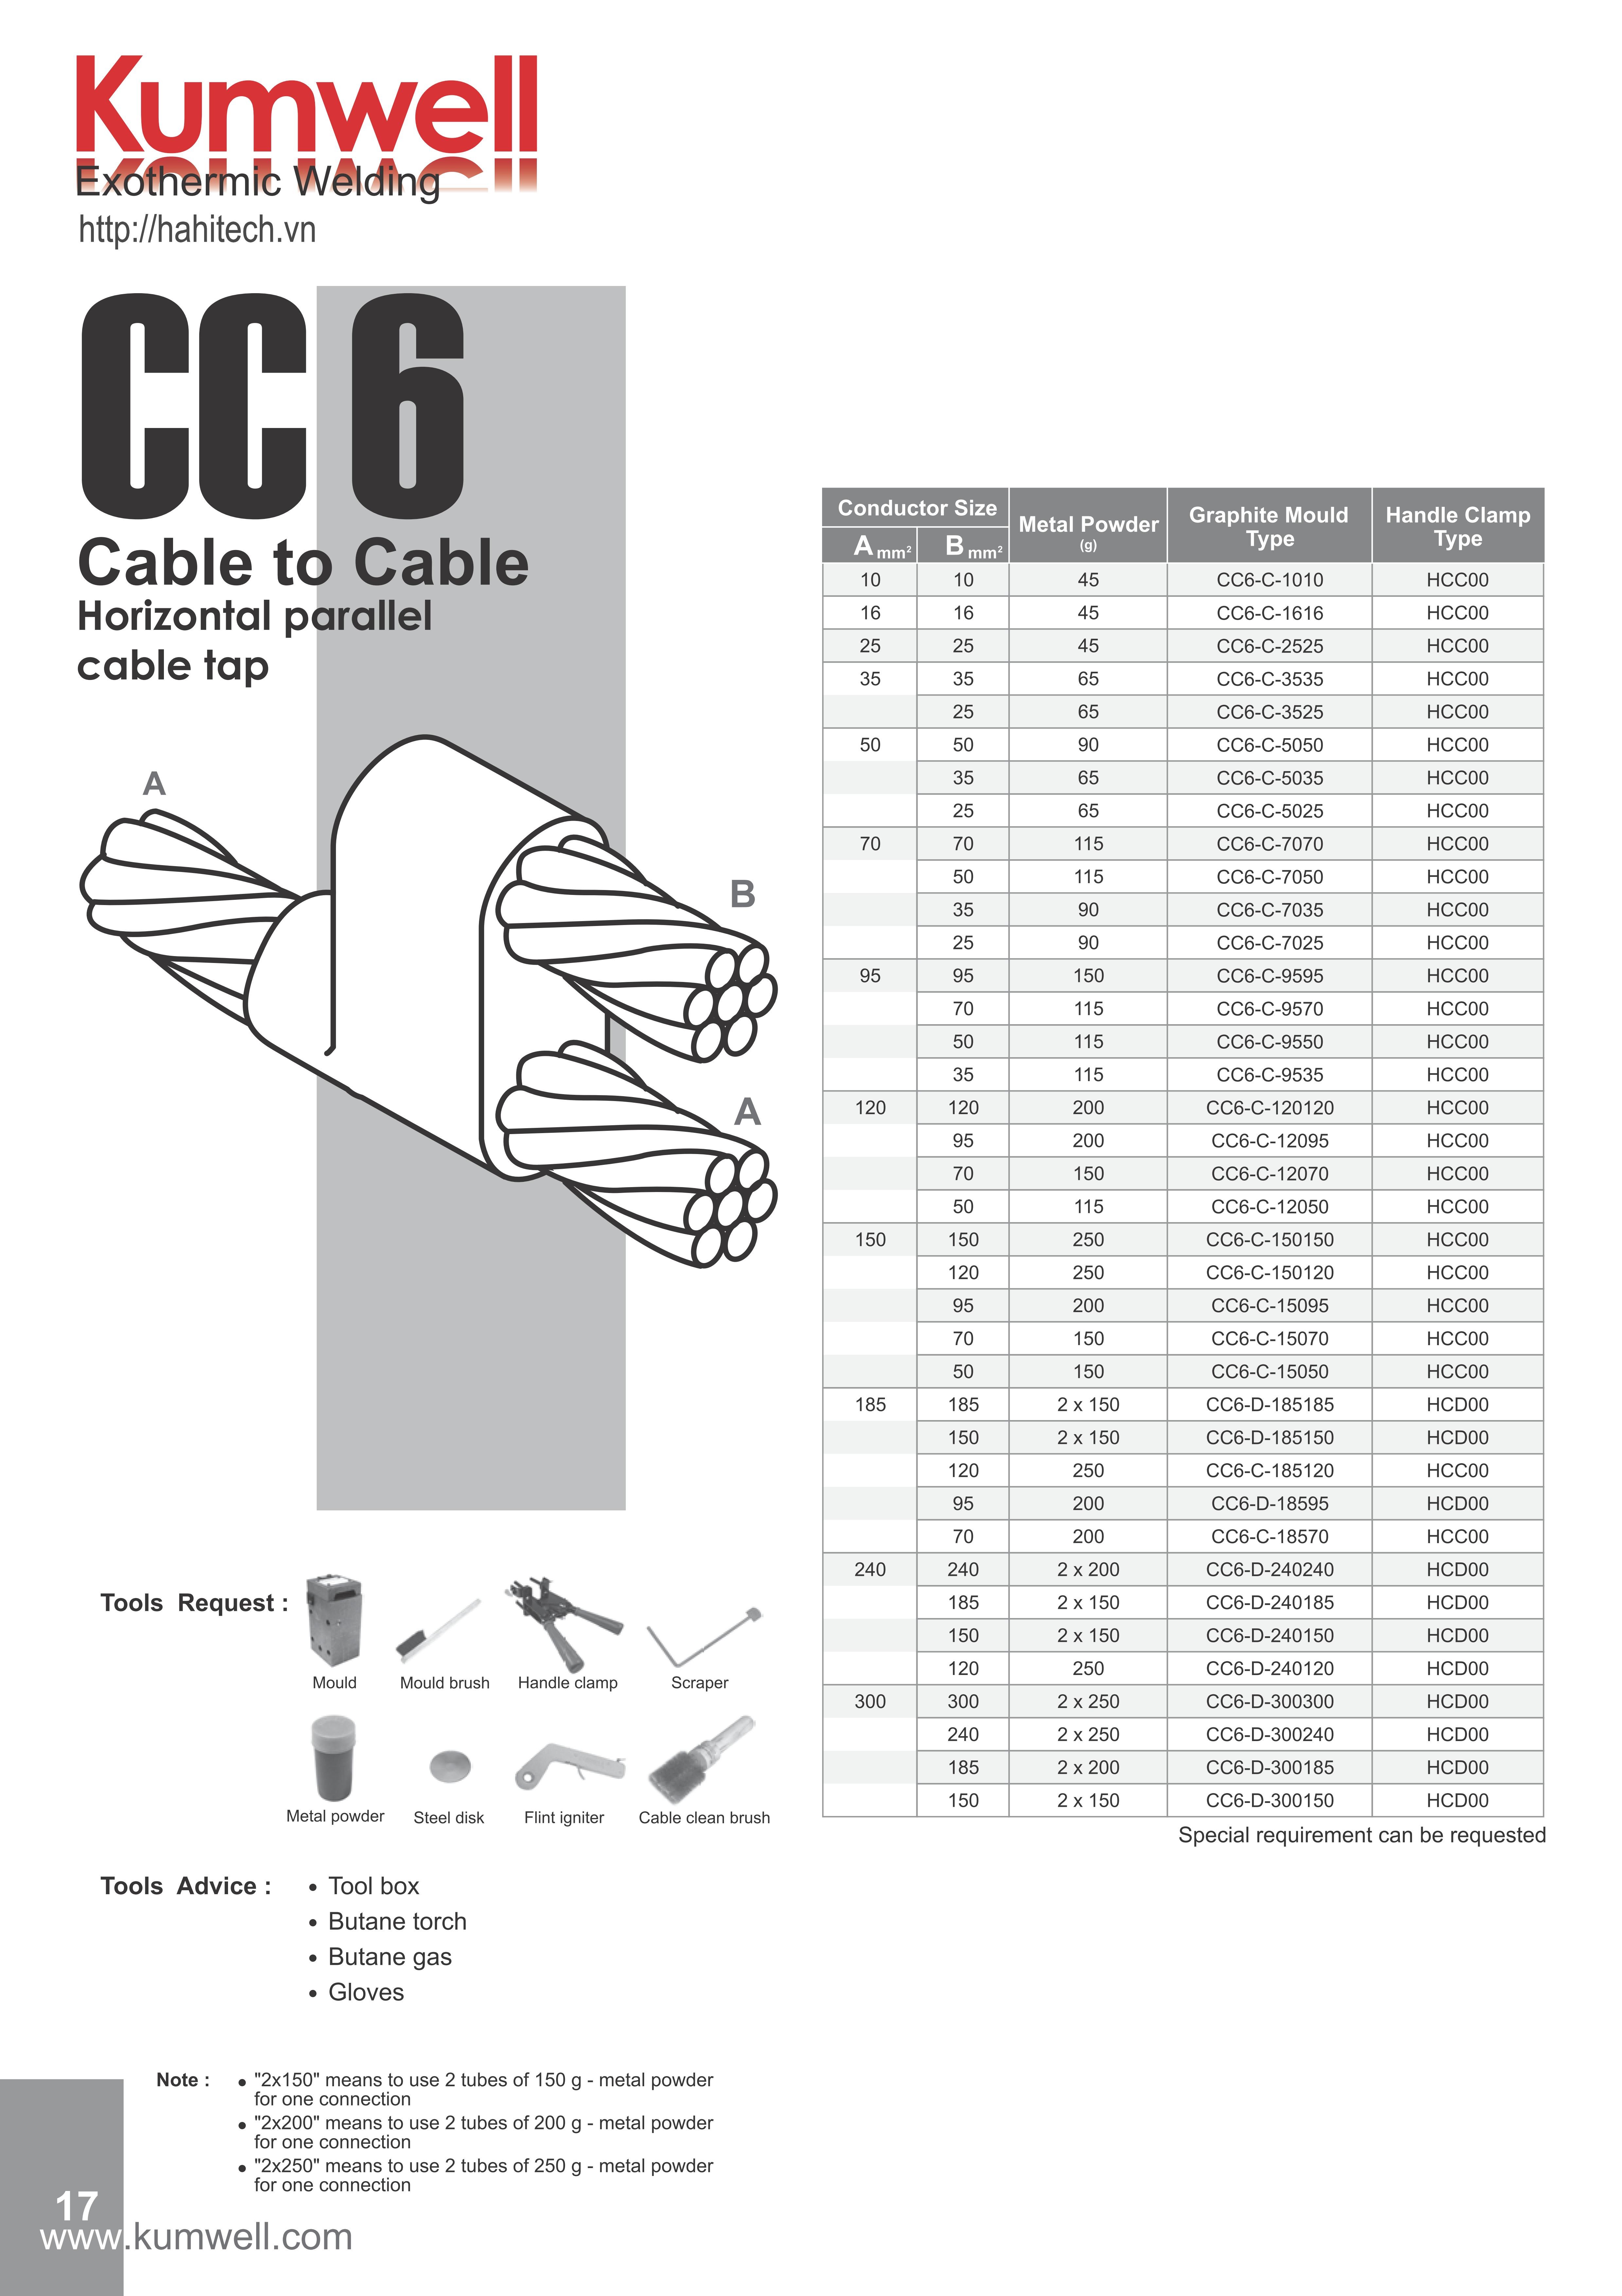 CC6-C-9550, khuôn hàn hóa nhiệt 2, 3, 4 nhánh cáp song song ngang giữa cáp đồng trần M95 - 95mm2 với cáp đồng trần M50 - 50mm2